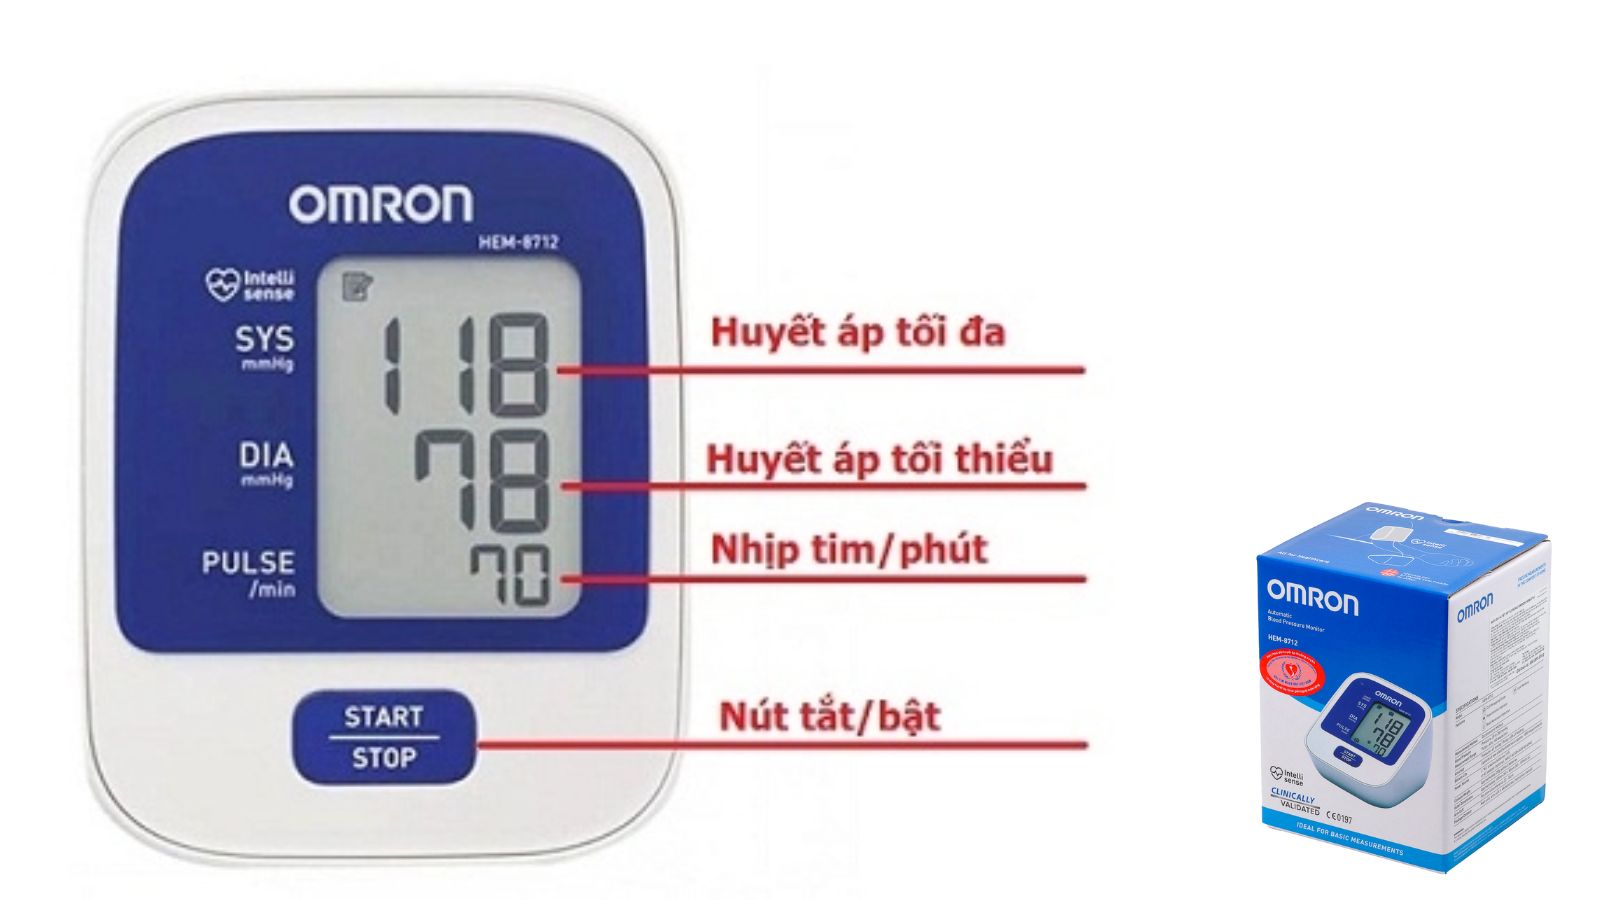 Màn hình máy đo huyết áp HEM-8712 hiển thị rõ các chỉ số